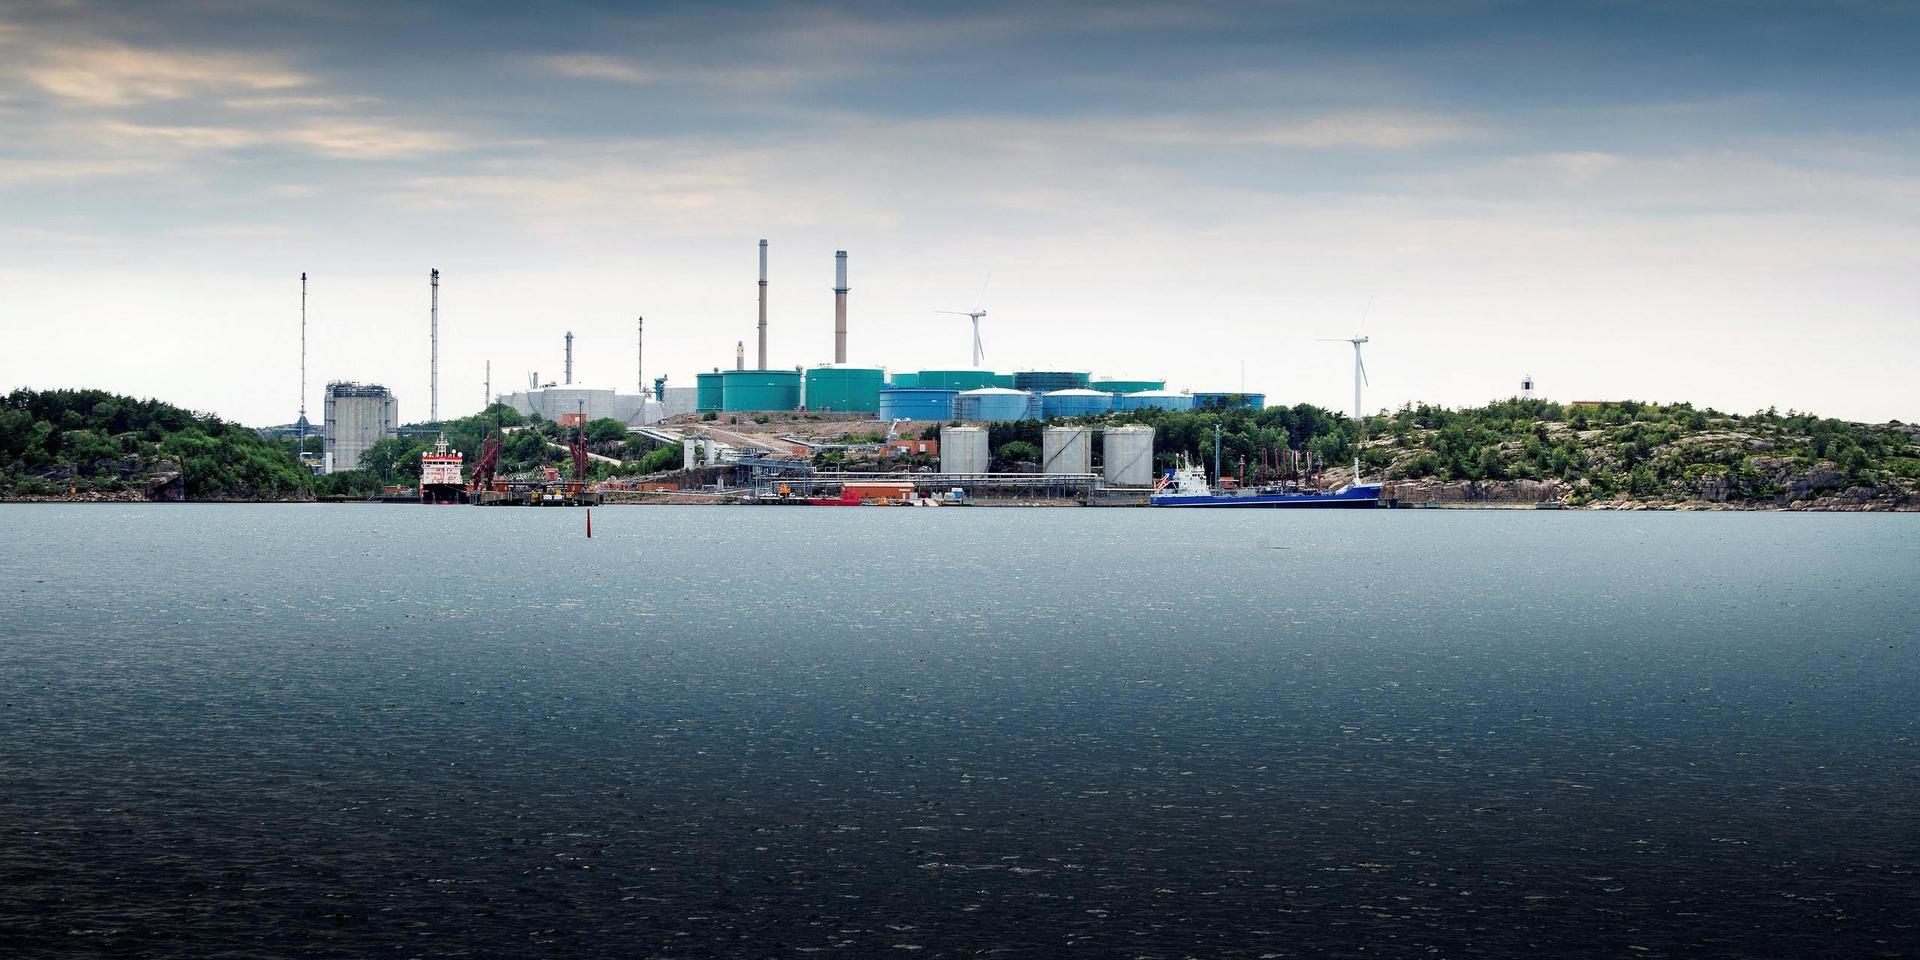 Preems utbyggnad av raffinaderiet är en av Sveriges mest ifrågasatta investeringar. Det är således obegripligt hur Lysekils kommun kan ta så lättvindigt på en sådan här miljöskadlig verksamhet, skriver Inge Löfgren, Lysekil-Munkedals Naturskyddsförening. 